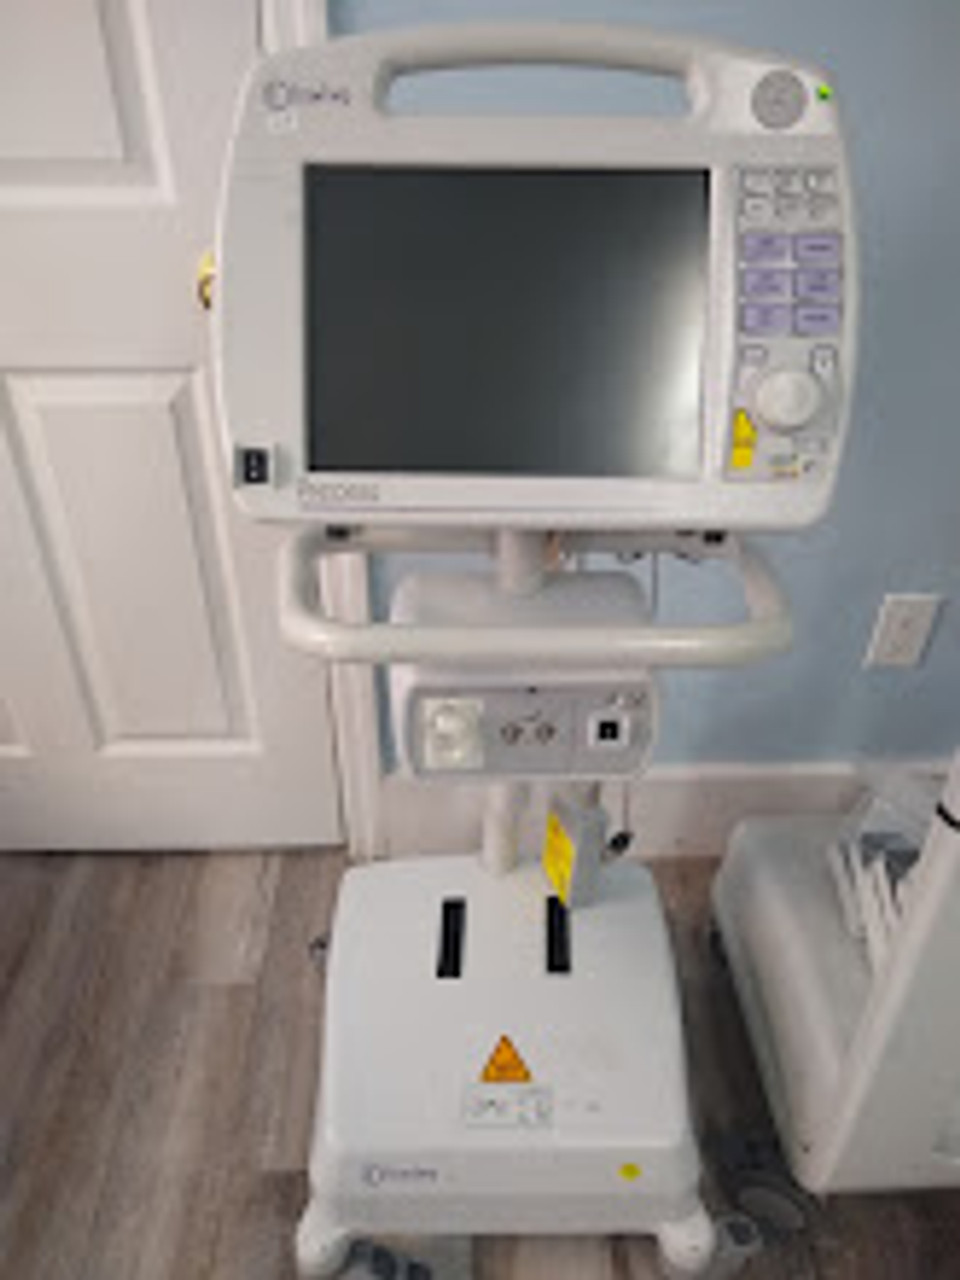 Invivo 3160 MRI Patient Monitoring System ( precess)